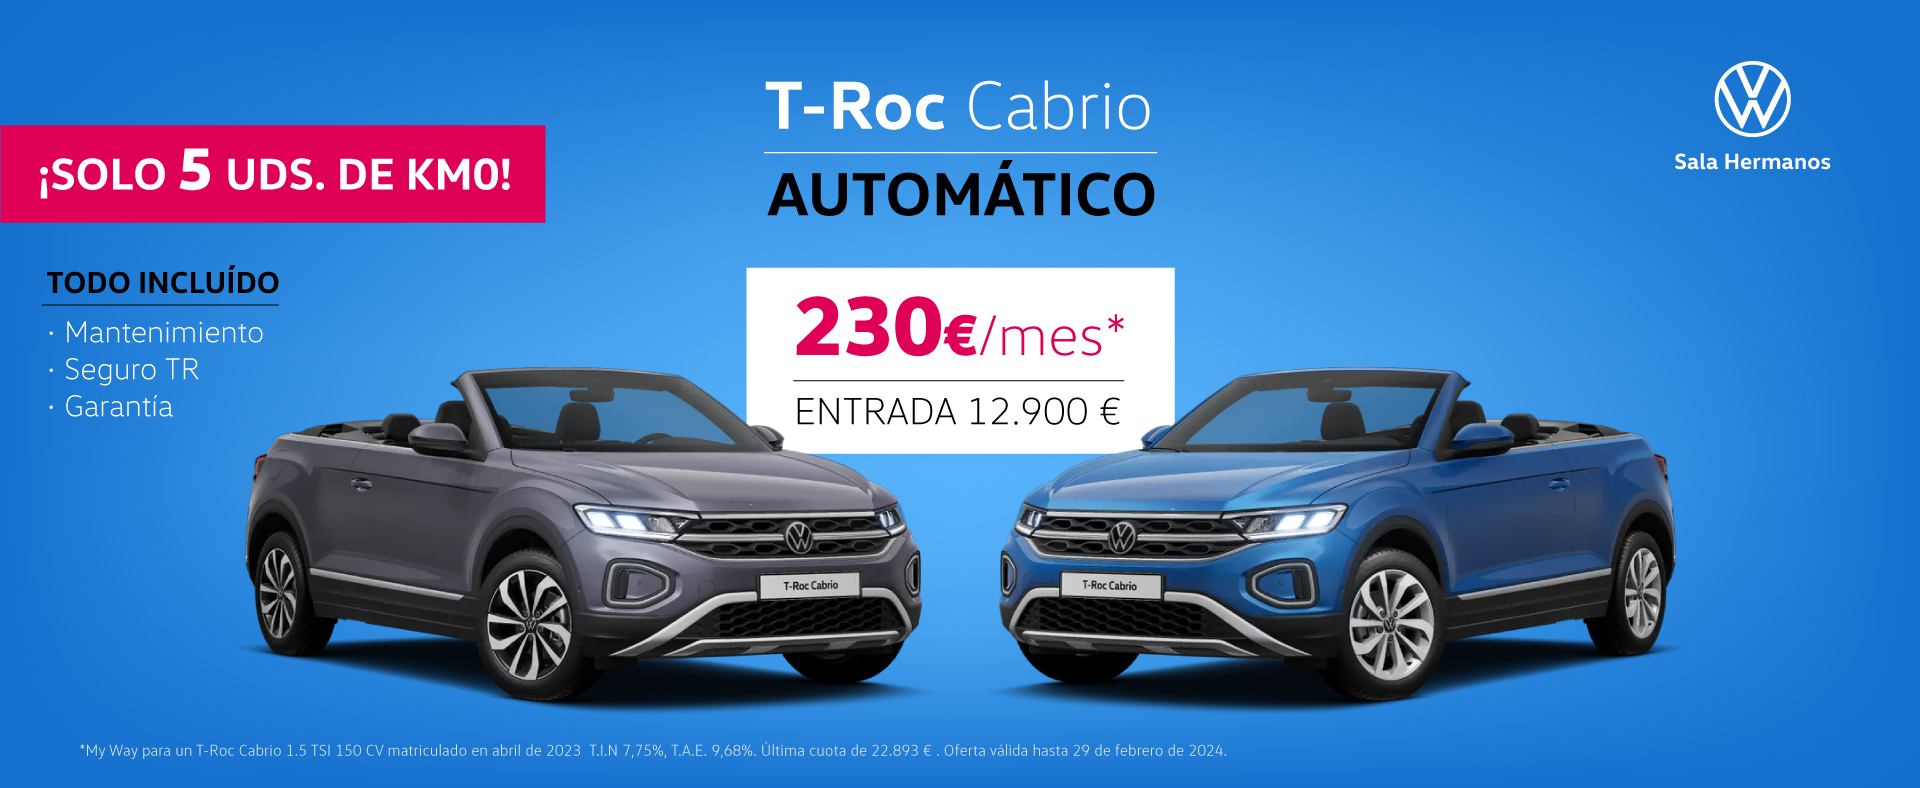 Oferta T-Roc Cabrio